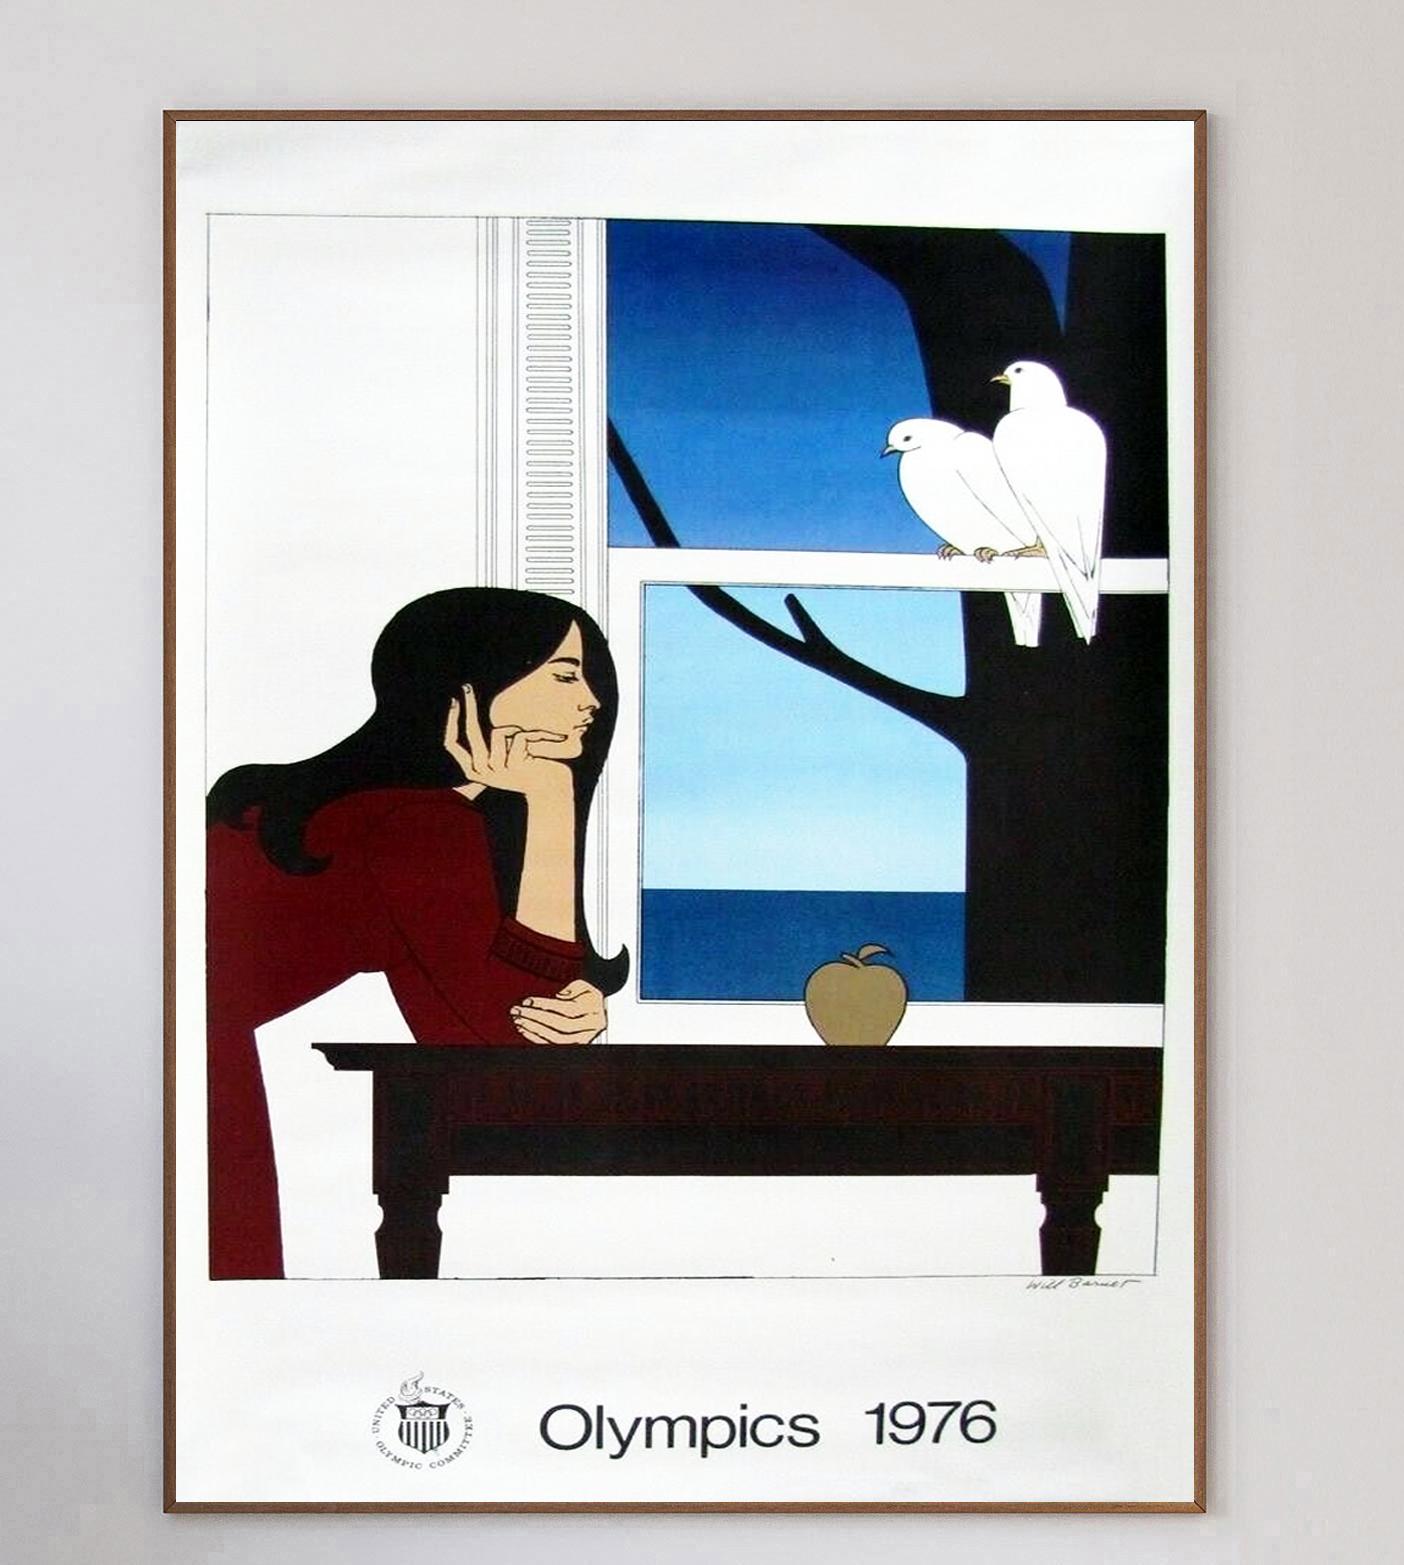 Der amerikanische Künstler Will Barnet war einer von mehreren Künstlern, die mit der Gestaltung von Kunstpostern für die Olympischen Sommerspiele 1976 in Montreal beauftragt wurden. Die Spiele, die ersten und einzigen Sommerspiele, die in Kanada